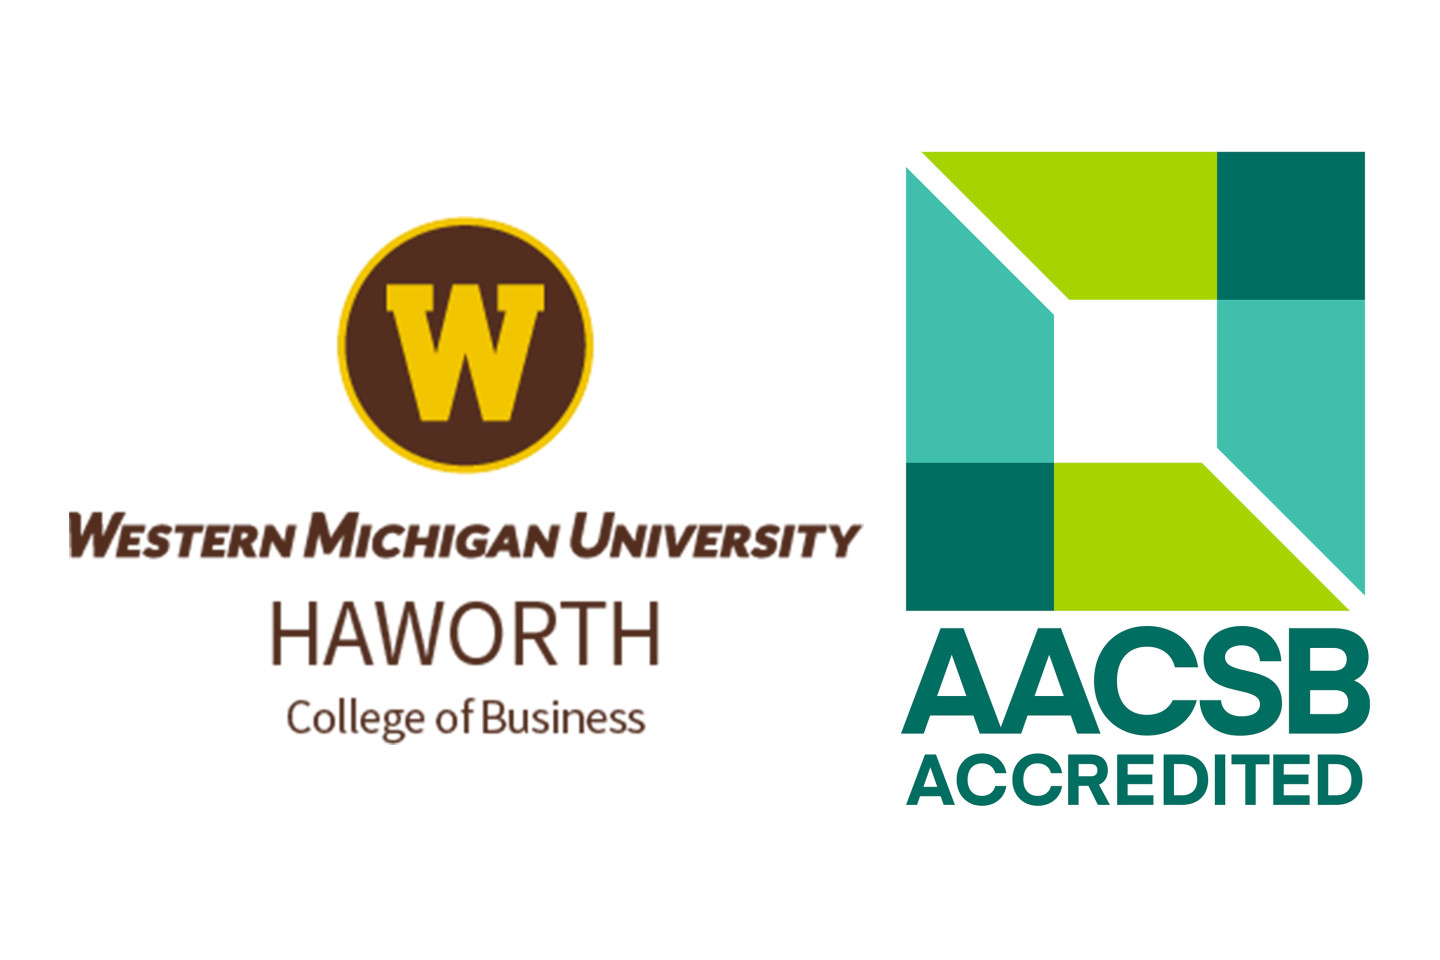 WMU Haworth and AACSB accreditation